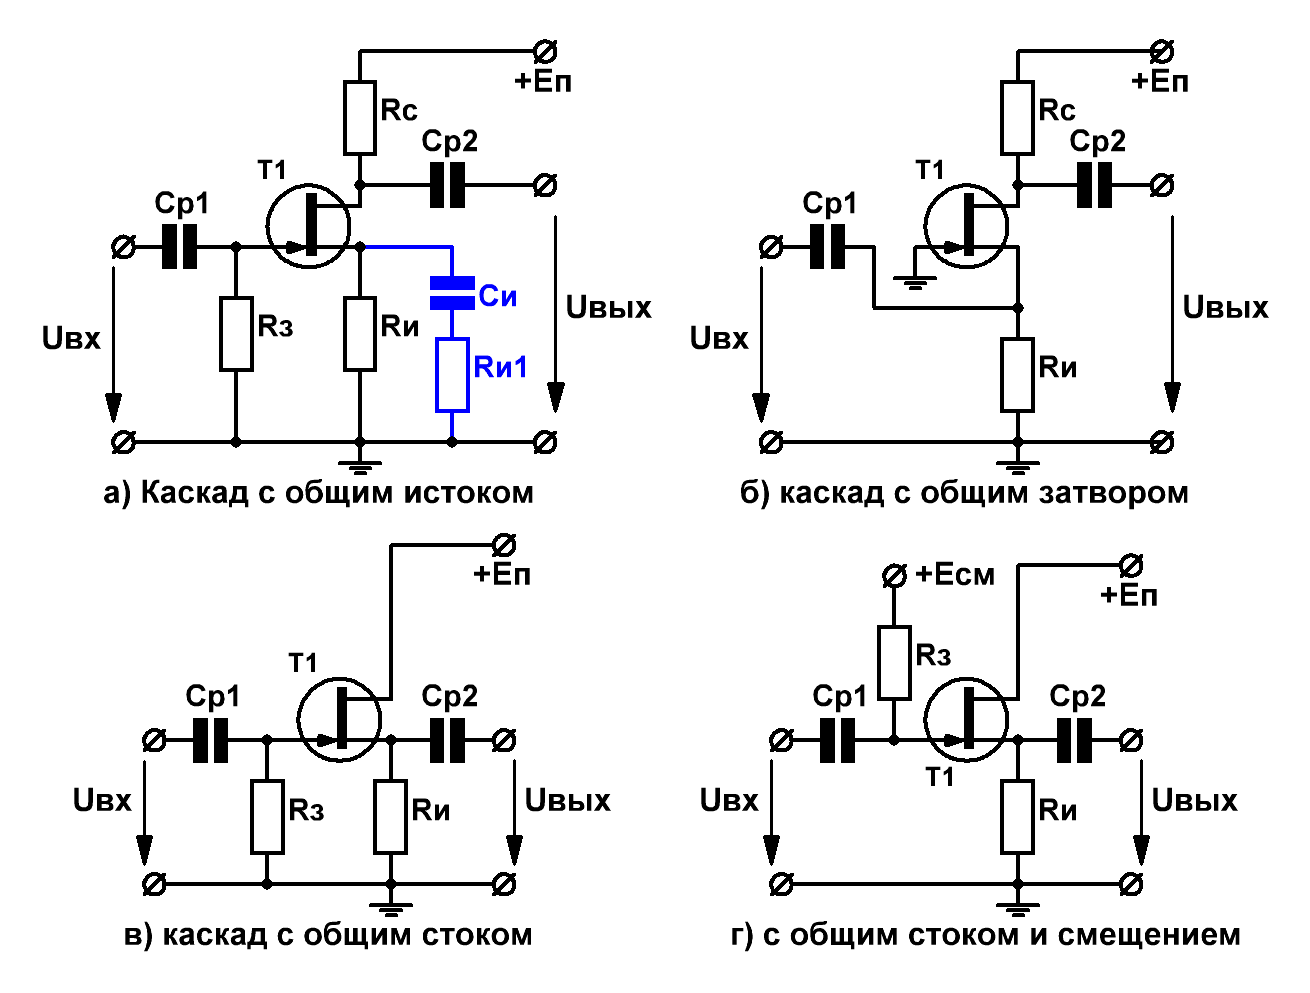 Подключение транзистора с общим эмиттером,коллектором и базой